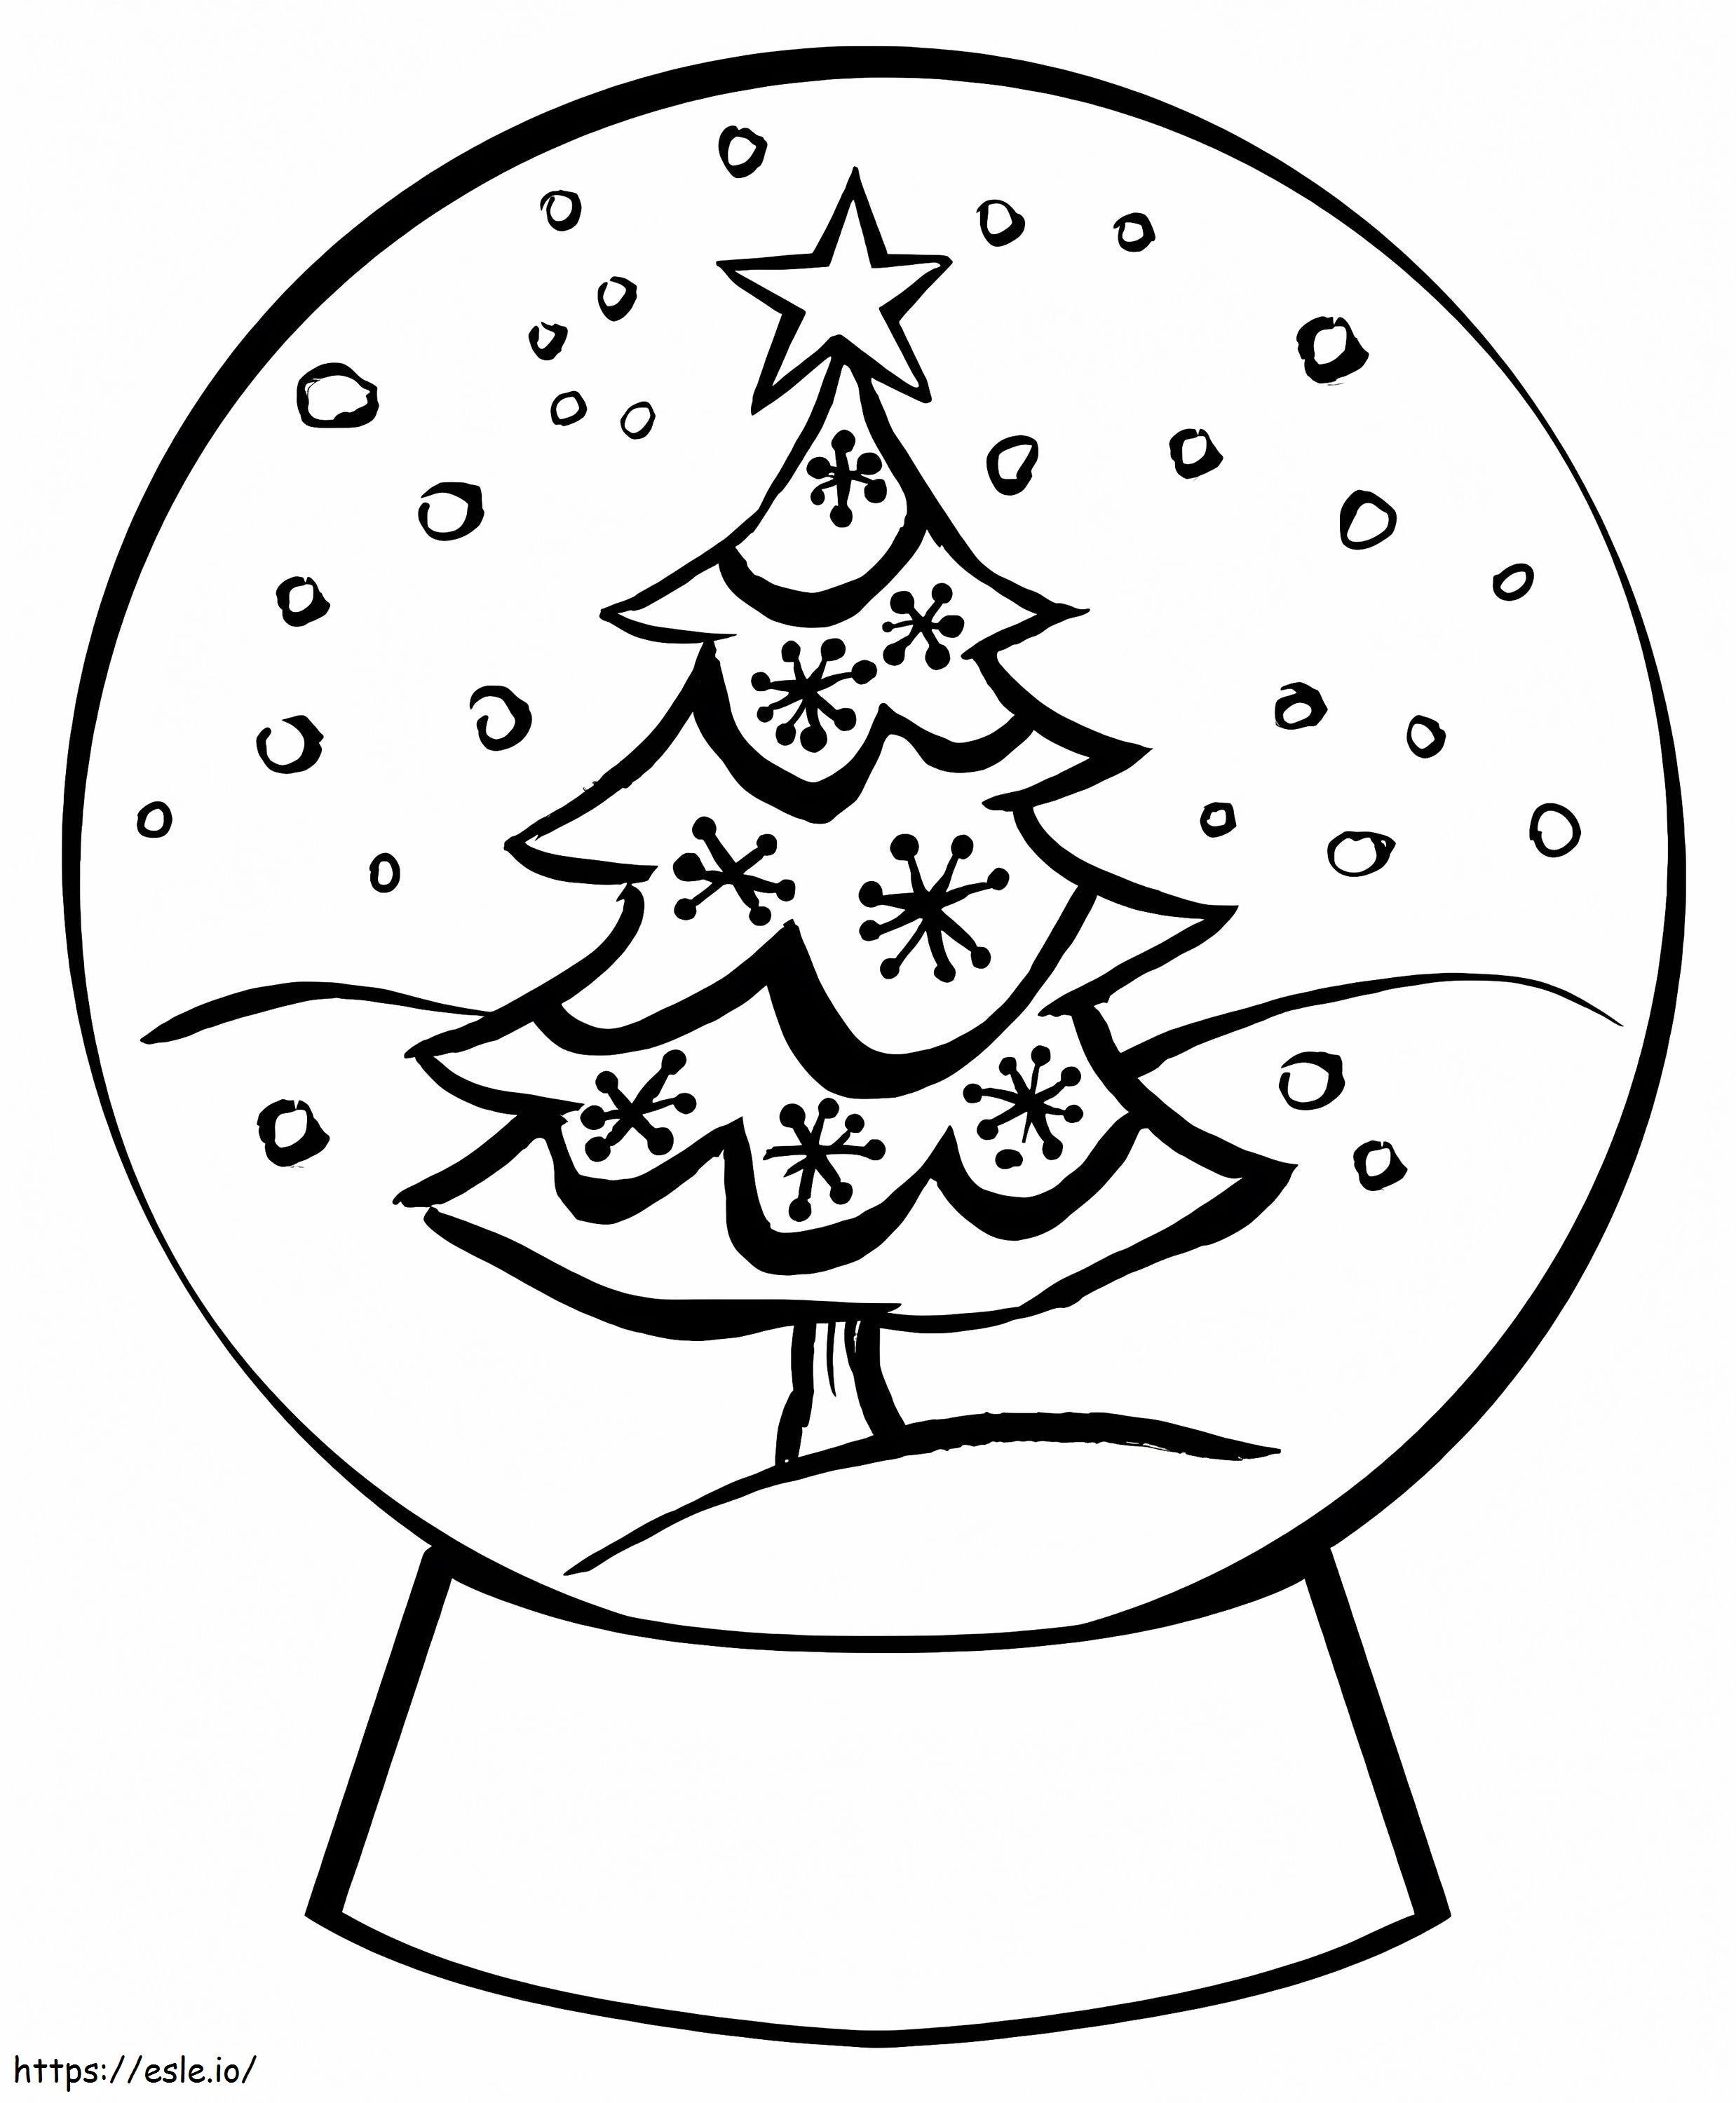 Globo de neve grátis com árvore de Natal para colorir